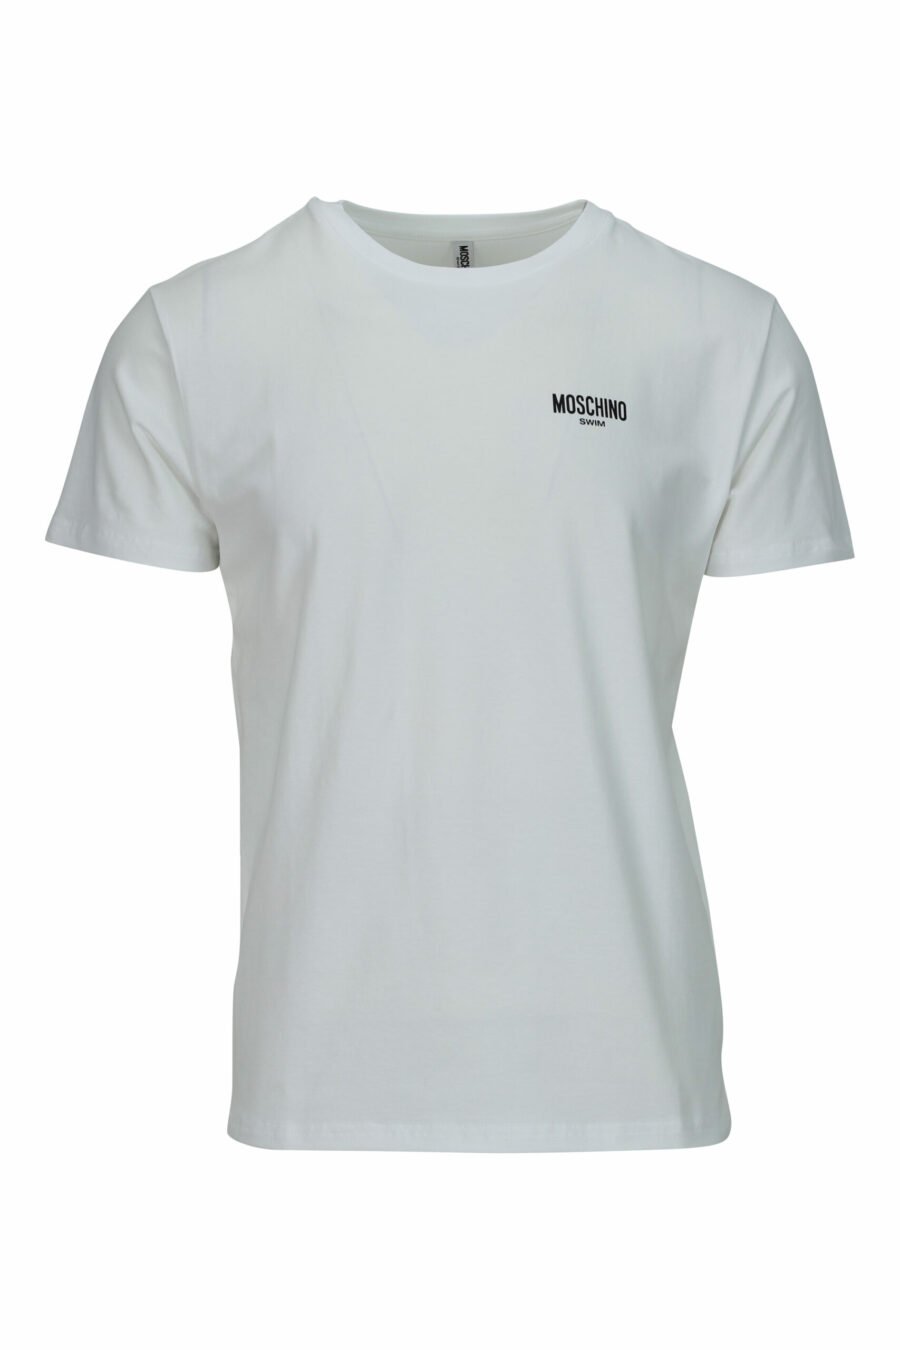 T-shirt blanc avec minilogue "nage" - 667113673356 échelonné